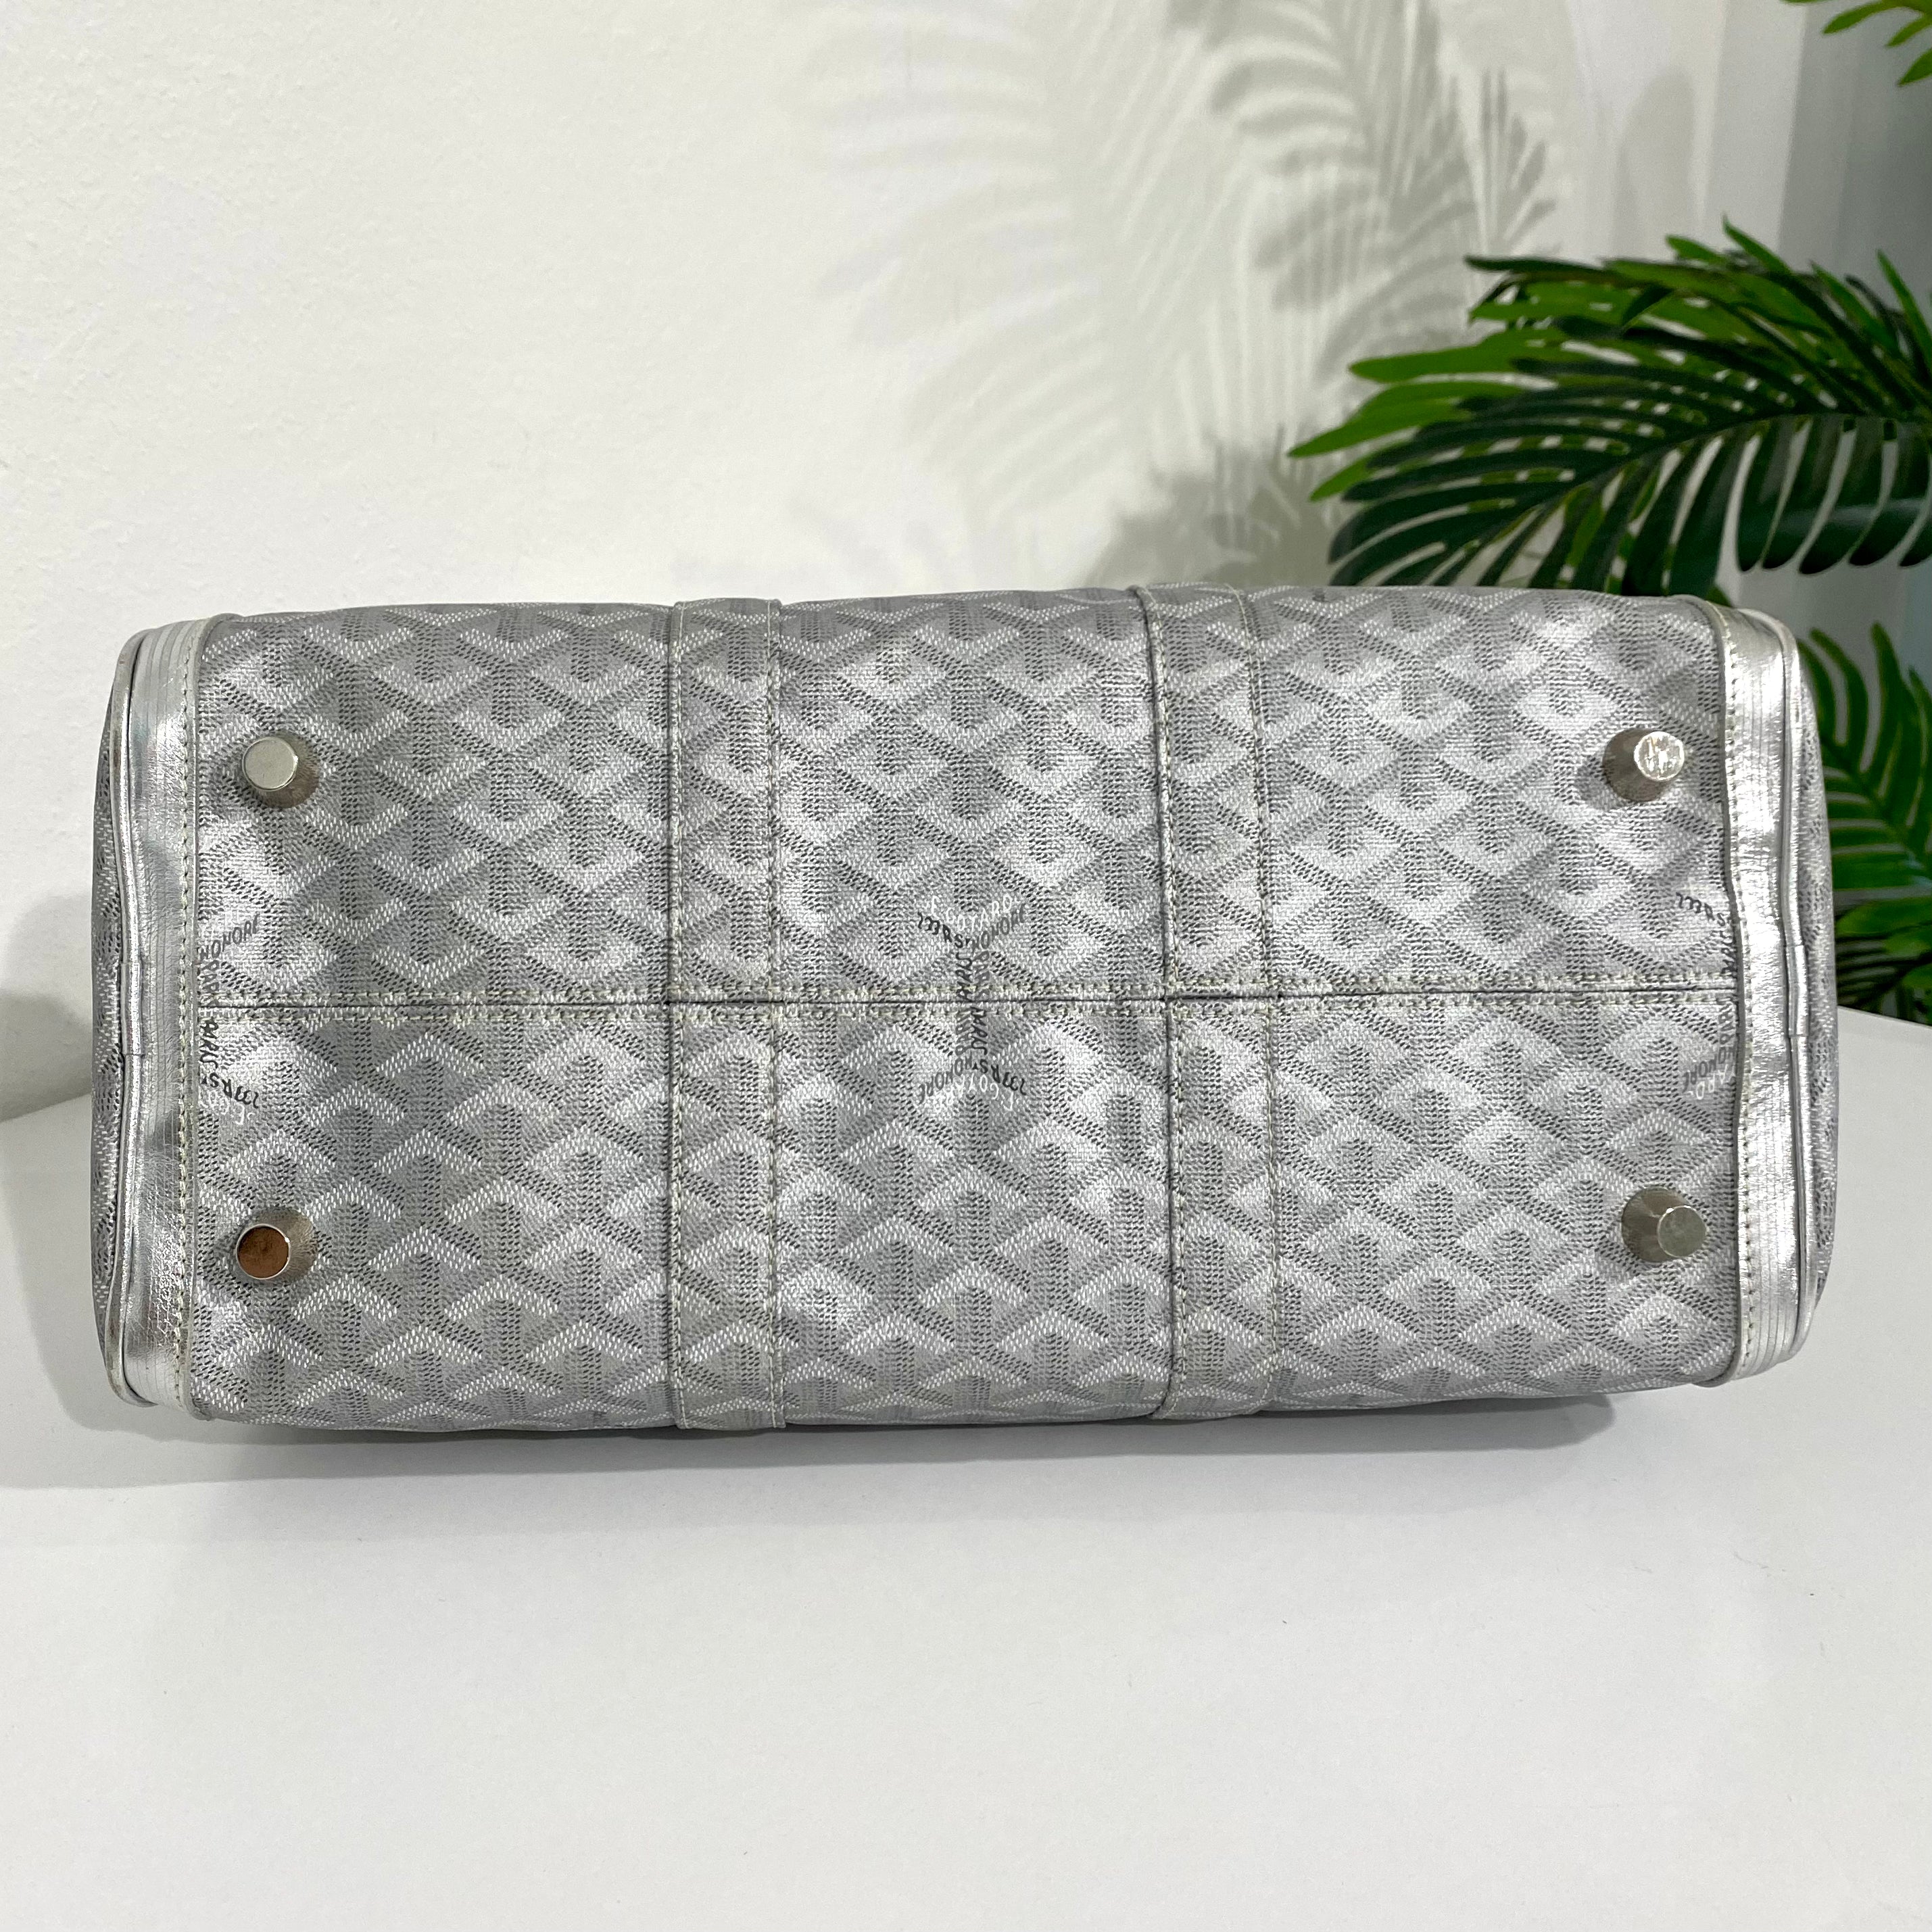 Goyard Croisere Metallic Silver Leather Duffle Bag by Goyard (Co.) on artnet